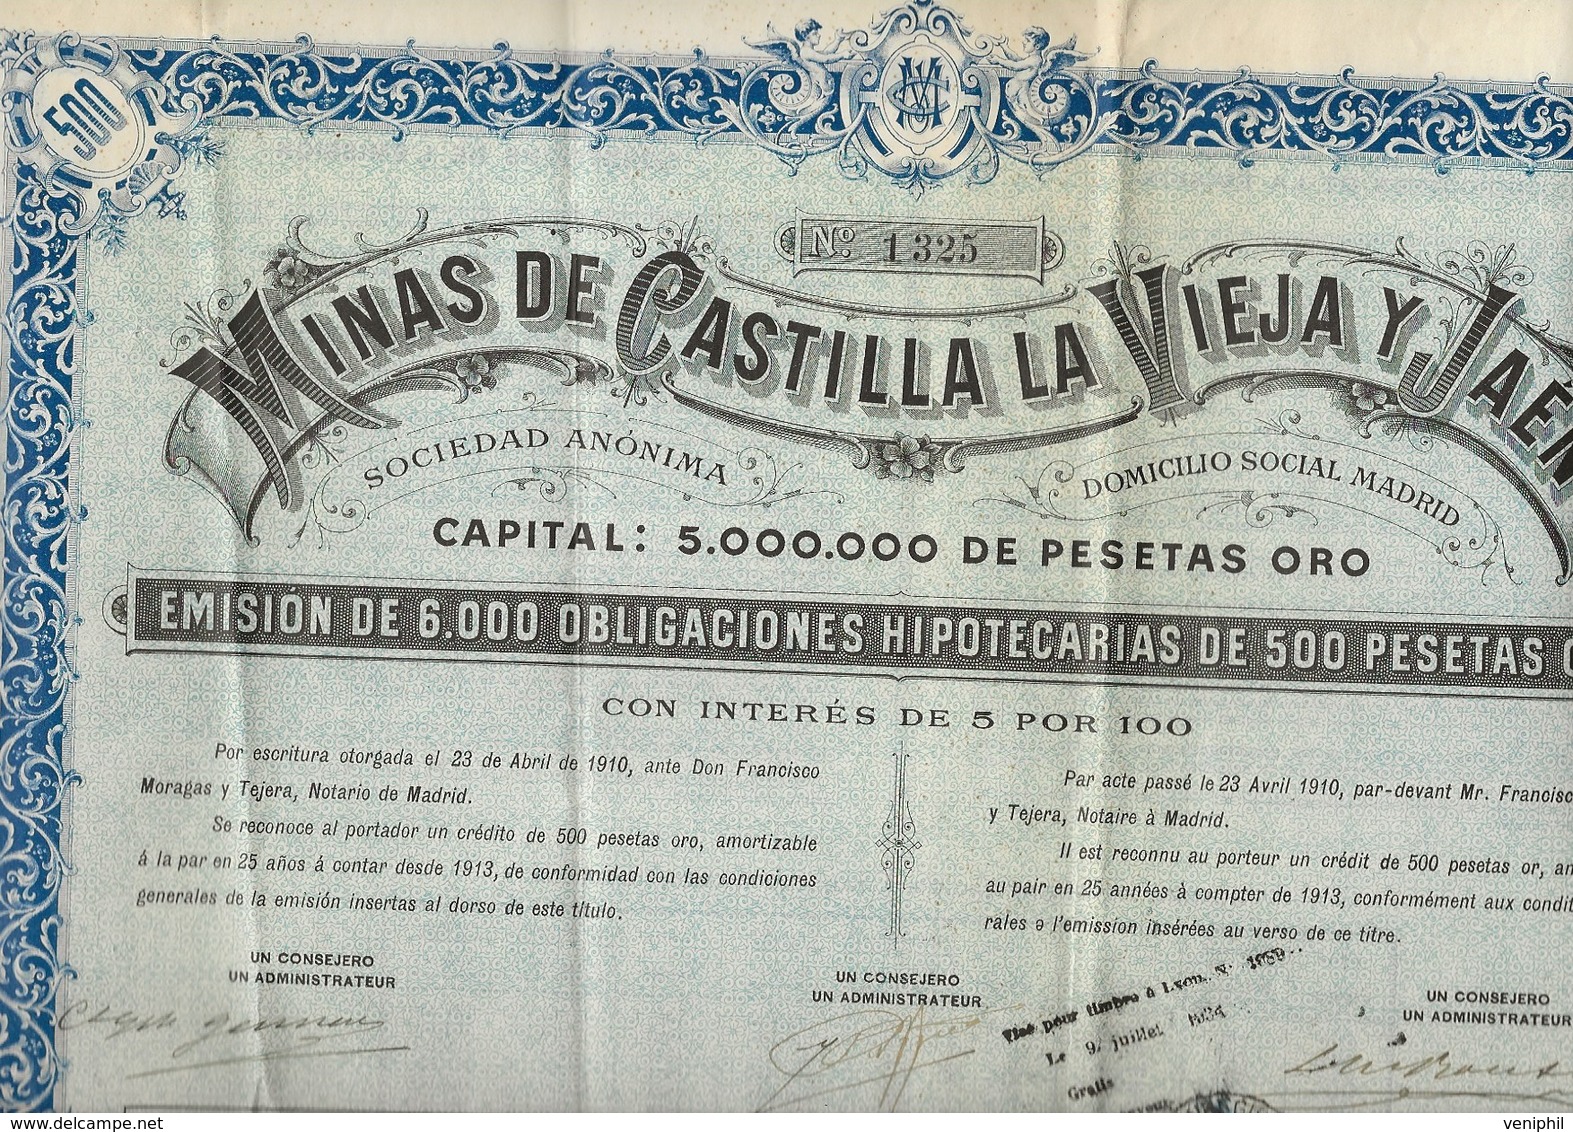 MINES DECASTILLA LA VIEJA Y JAEN - 6000 OBLIGATIONS DE 500 PESETAS OR -ANNEE 1910 - Bergbau